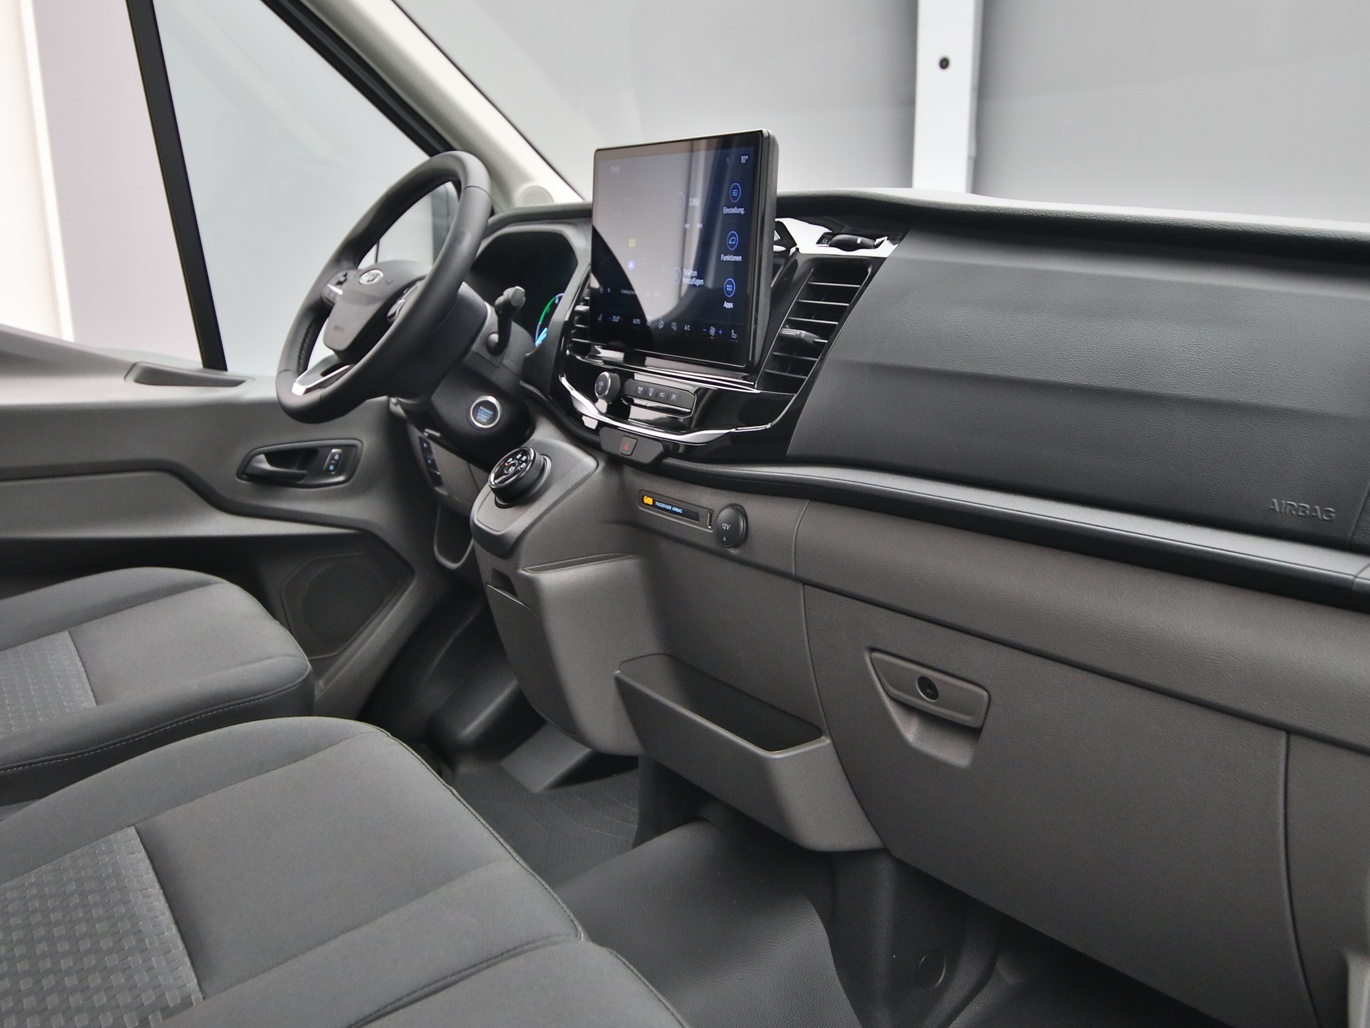  Ford E-Transit Kasten 350 L3 Trend Tech18 / Pro in Weiss 